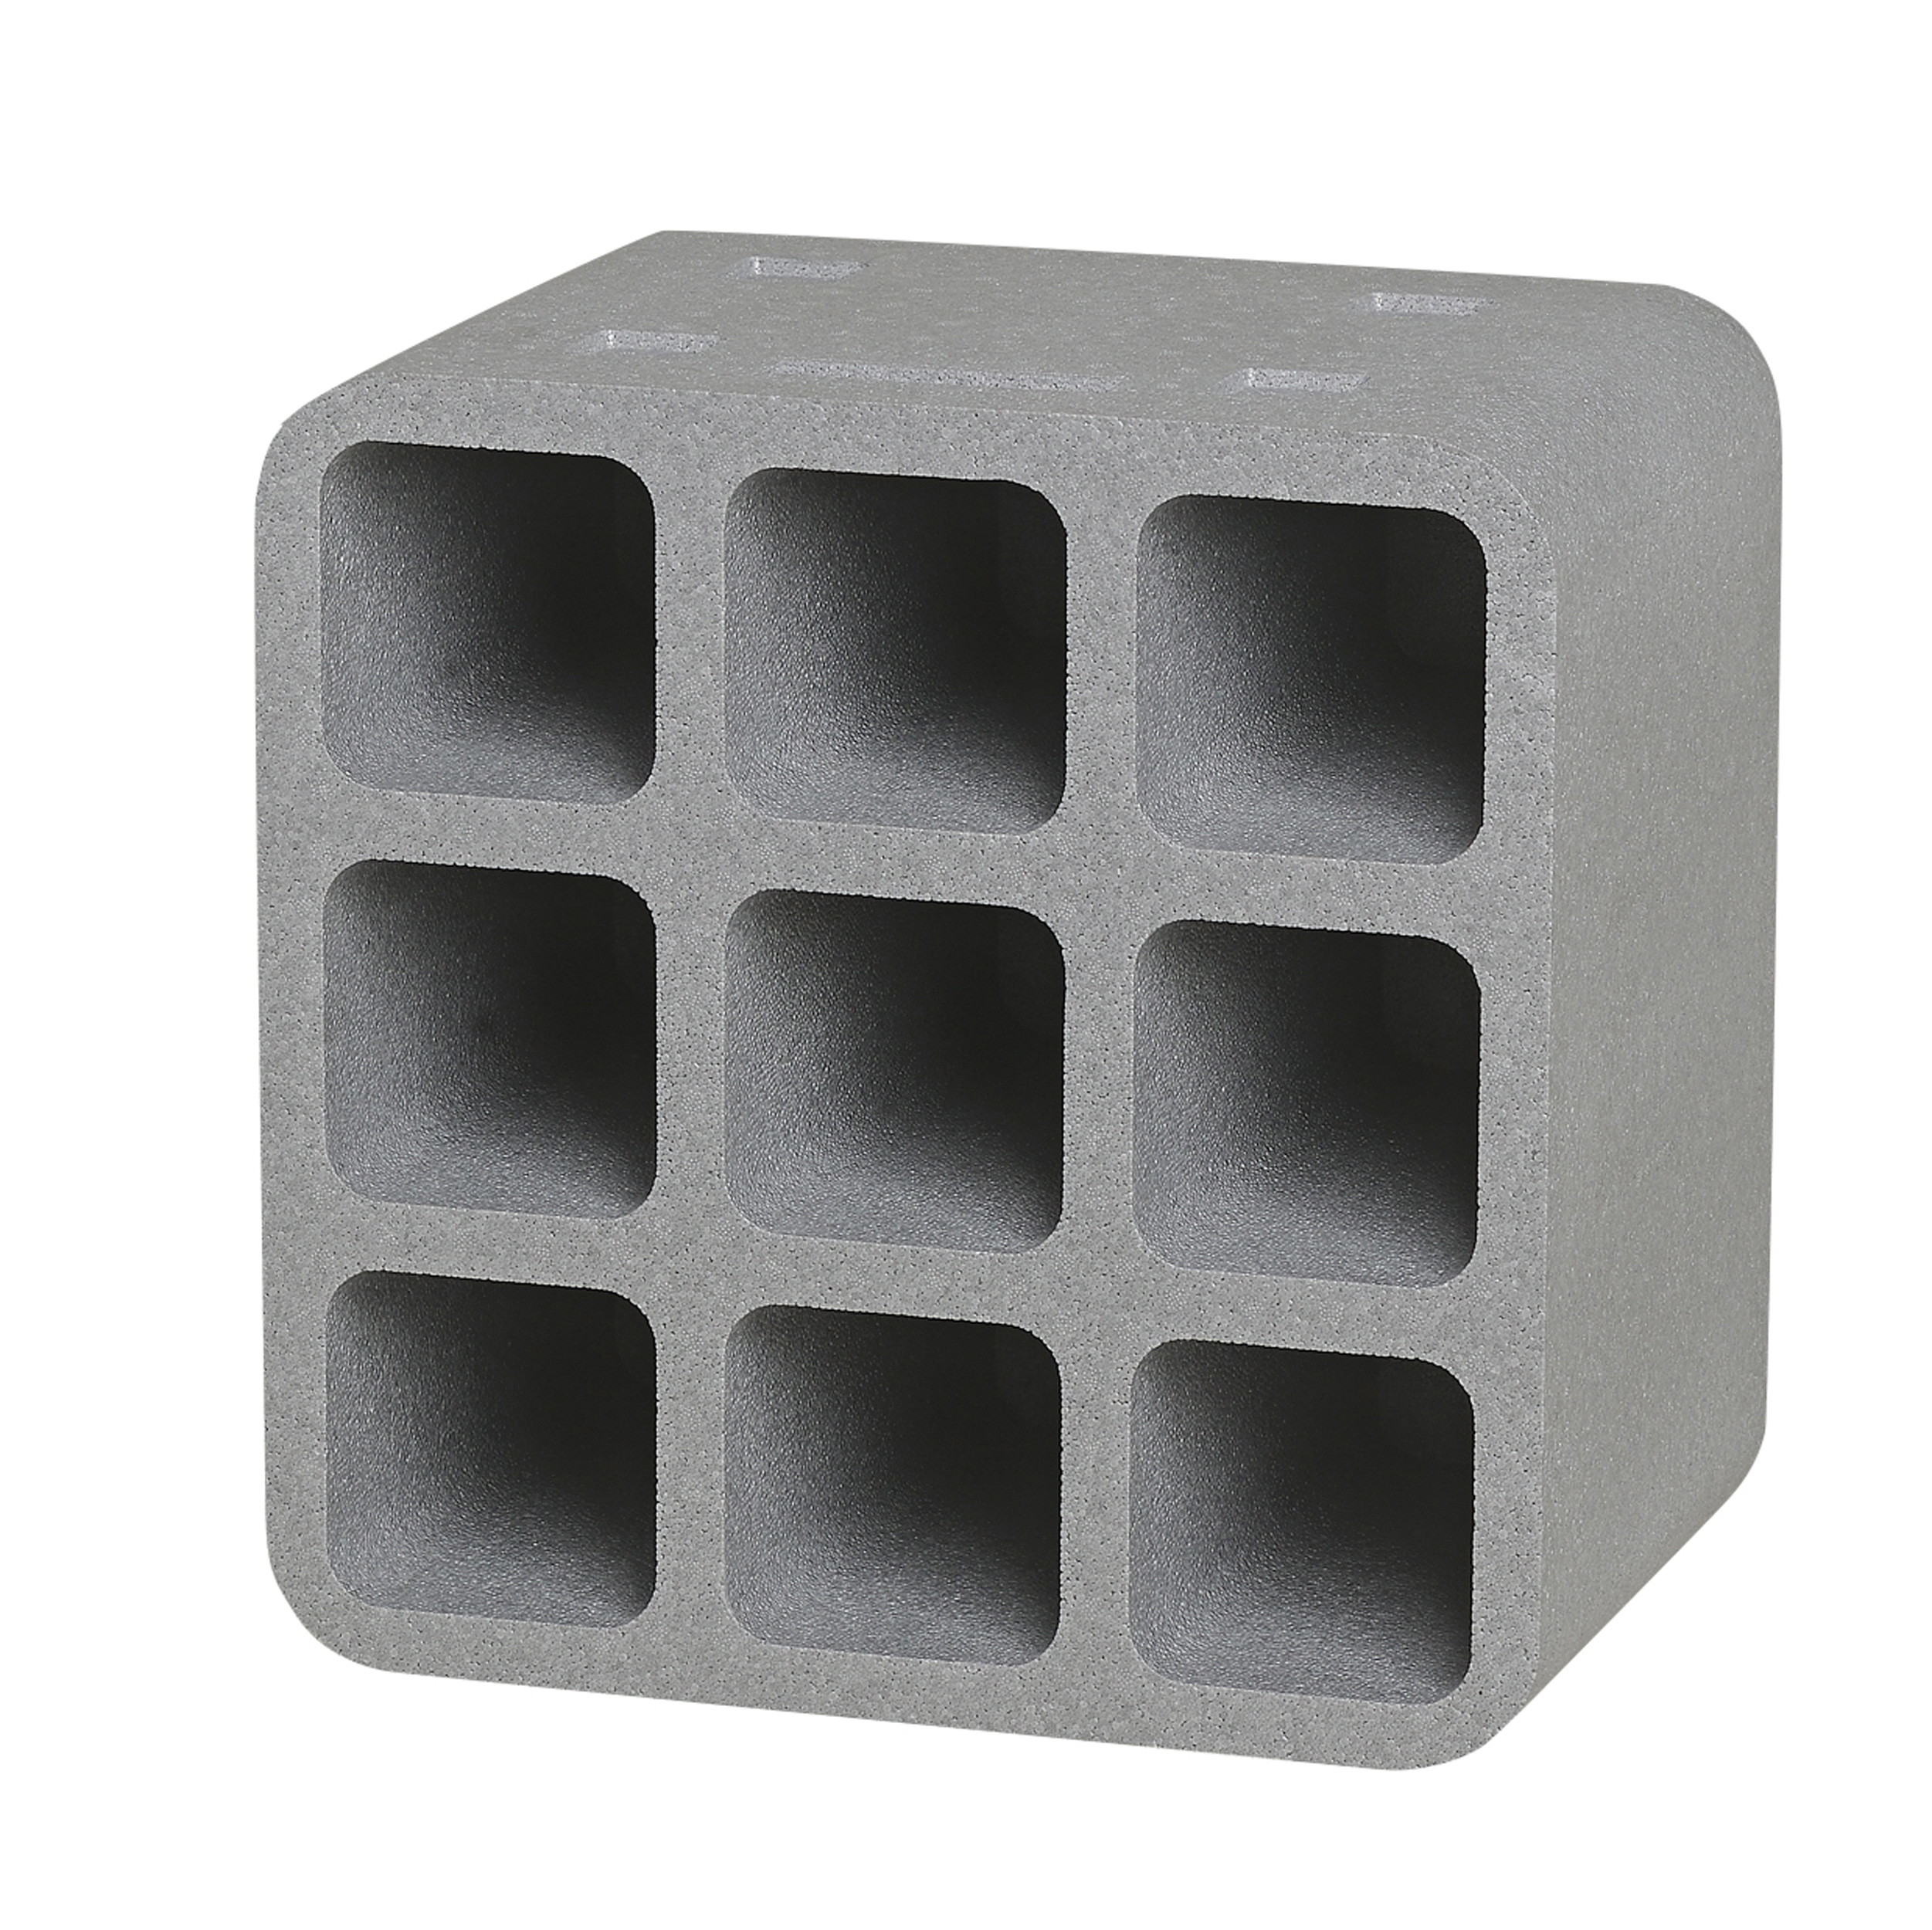 Climapor Flaschenbox Cube, grau, für 9 Flaschen max. Ø 9 cm - 1 Stück